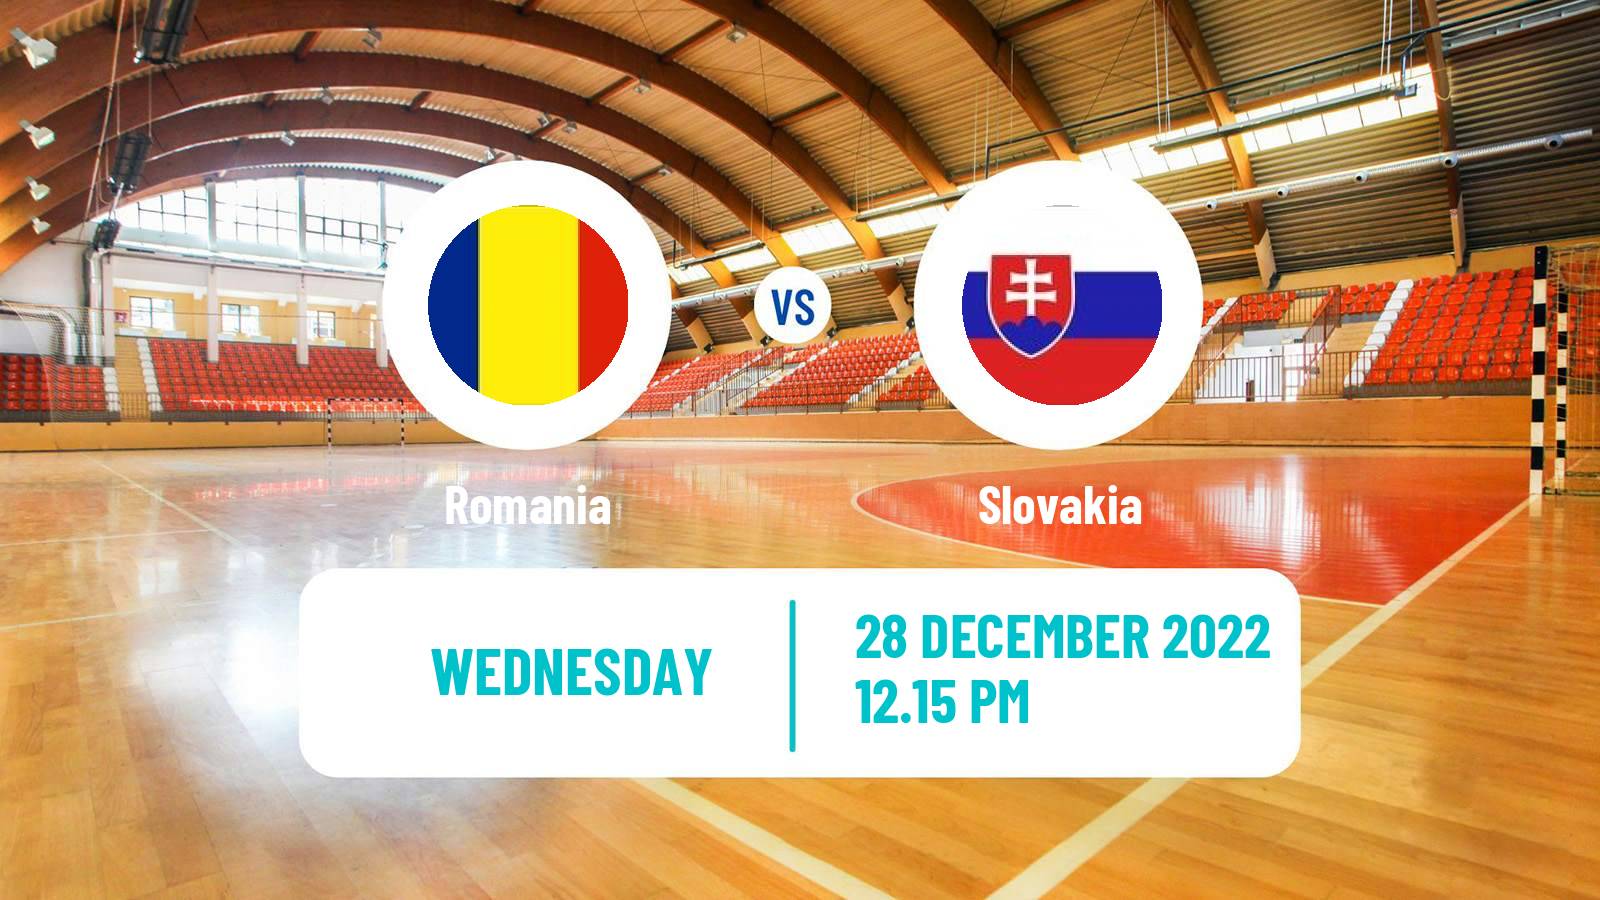 Handball Friendly International Handball Romania - Slovakia